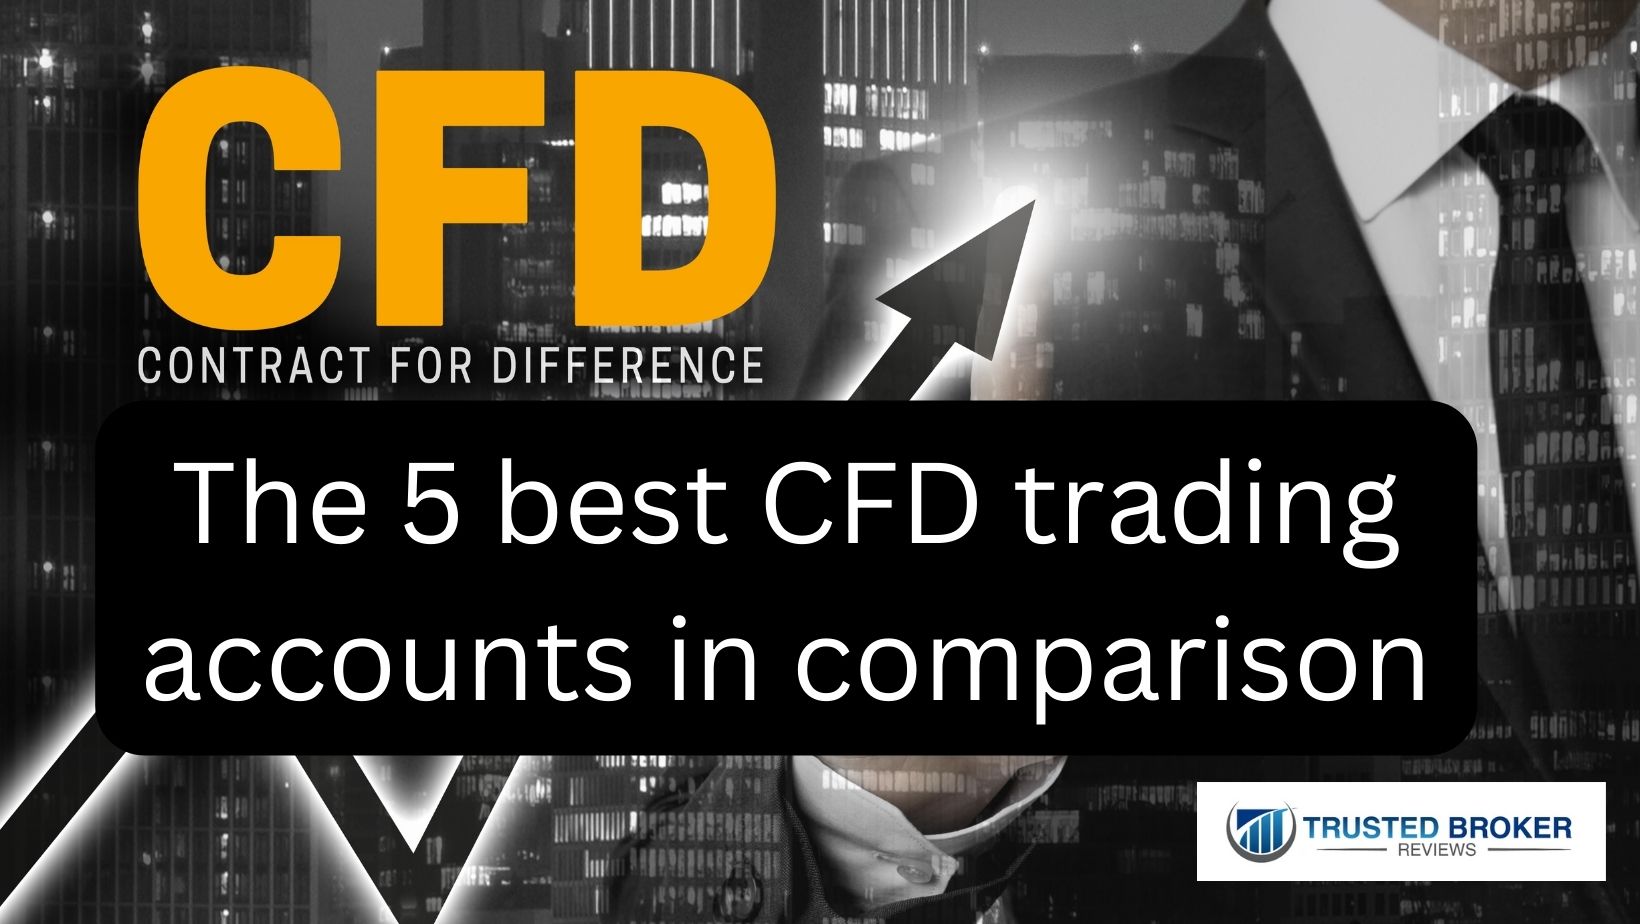 Cele mai bune 5 conturi de tranzacționare CFD în comparație